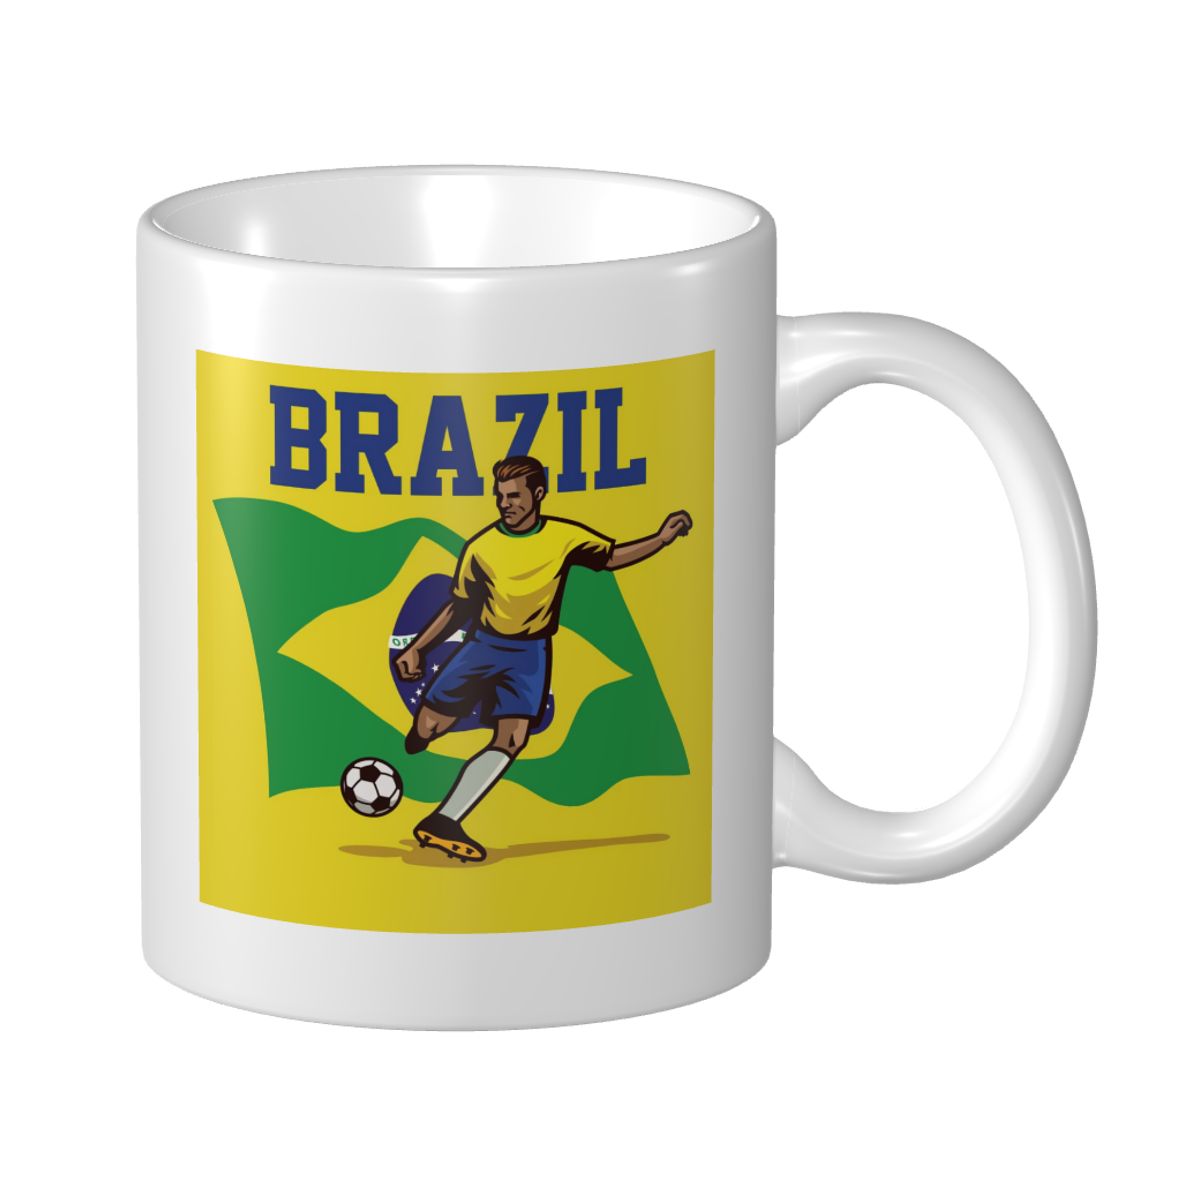 Brazil Soccer Player Ceramic Mug